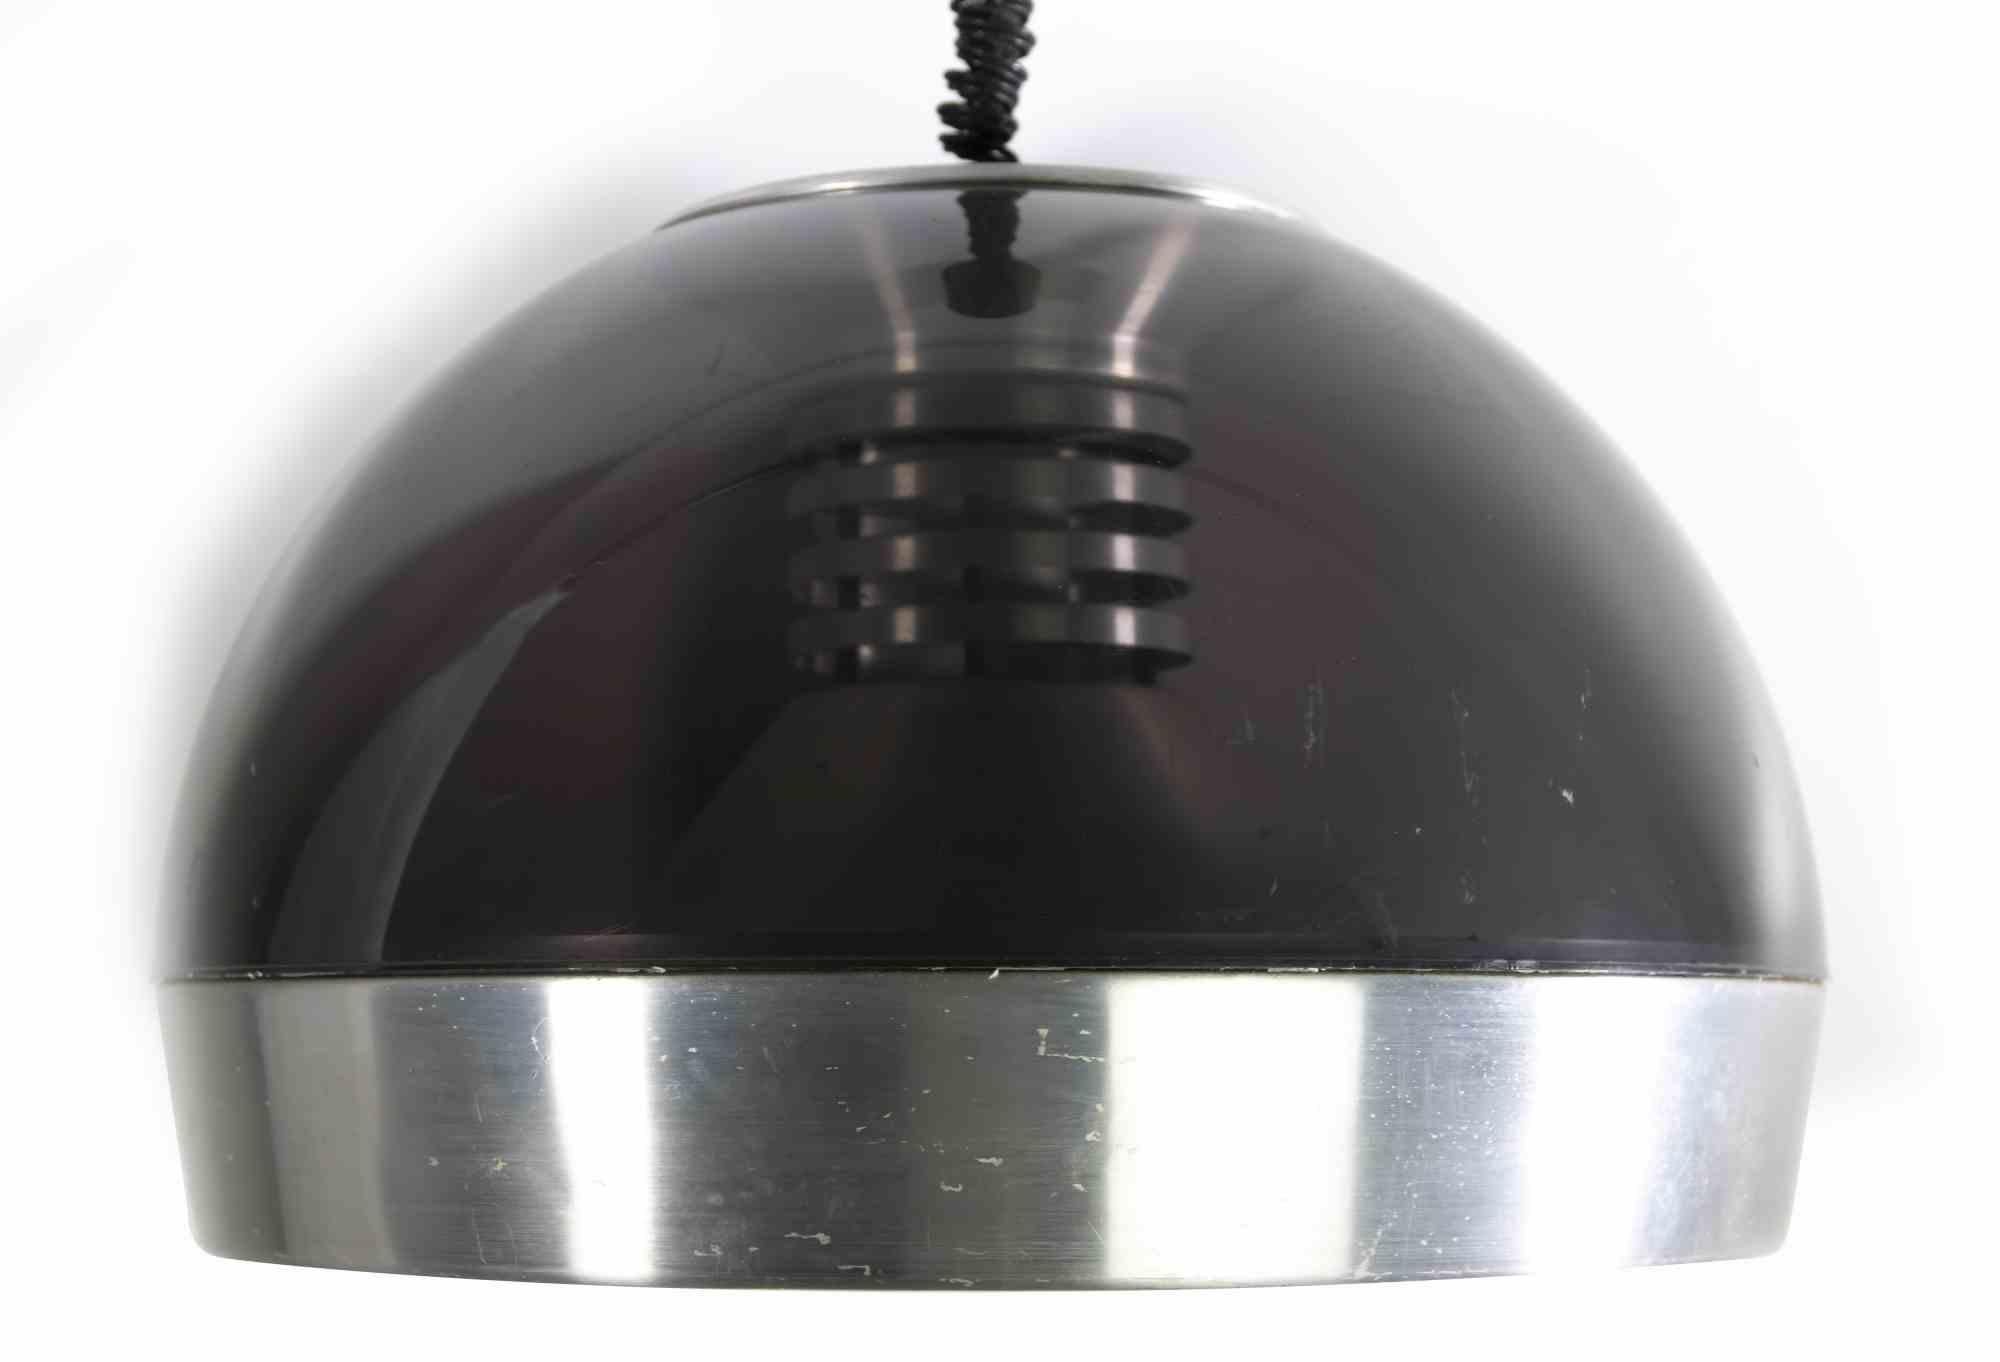 Le lustre Space Age est une lampe au design original réalisée dans les années 1970.

Cette lampe vintage est réalisée en plexiglas fumé et aluminium.

État neuf (quelques rayures sur la surface).